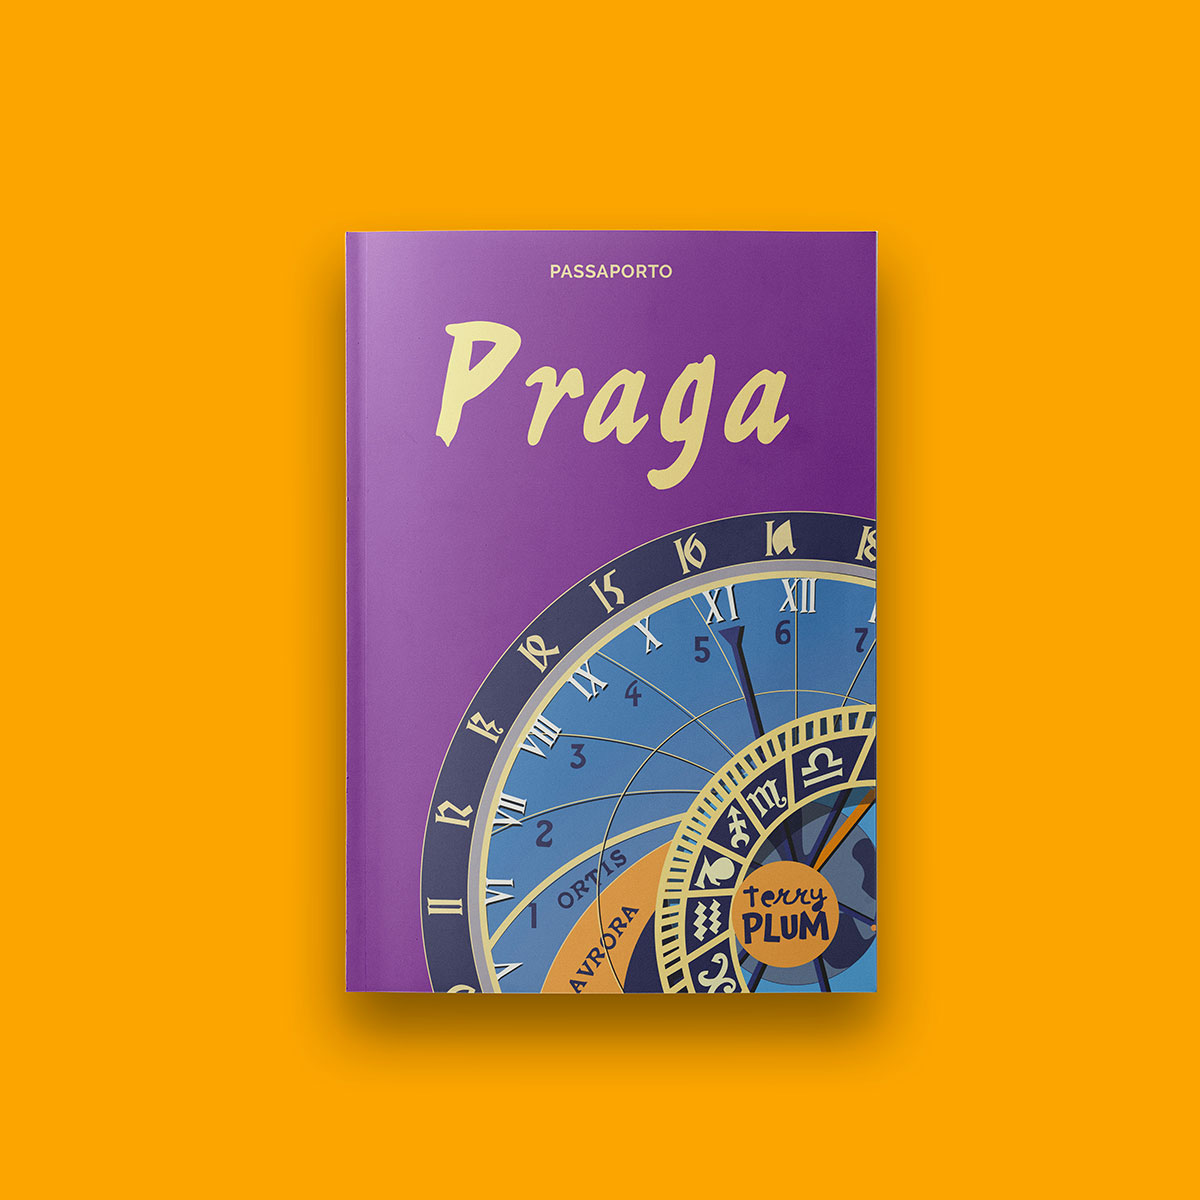 Passaporto Praga Terry PLum